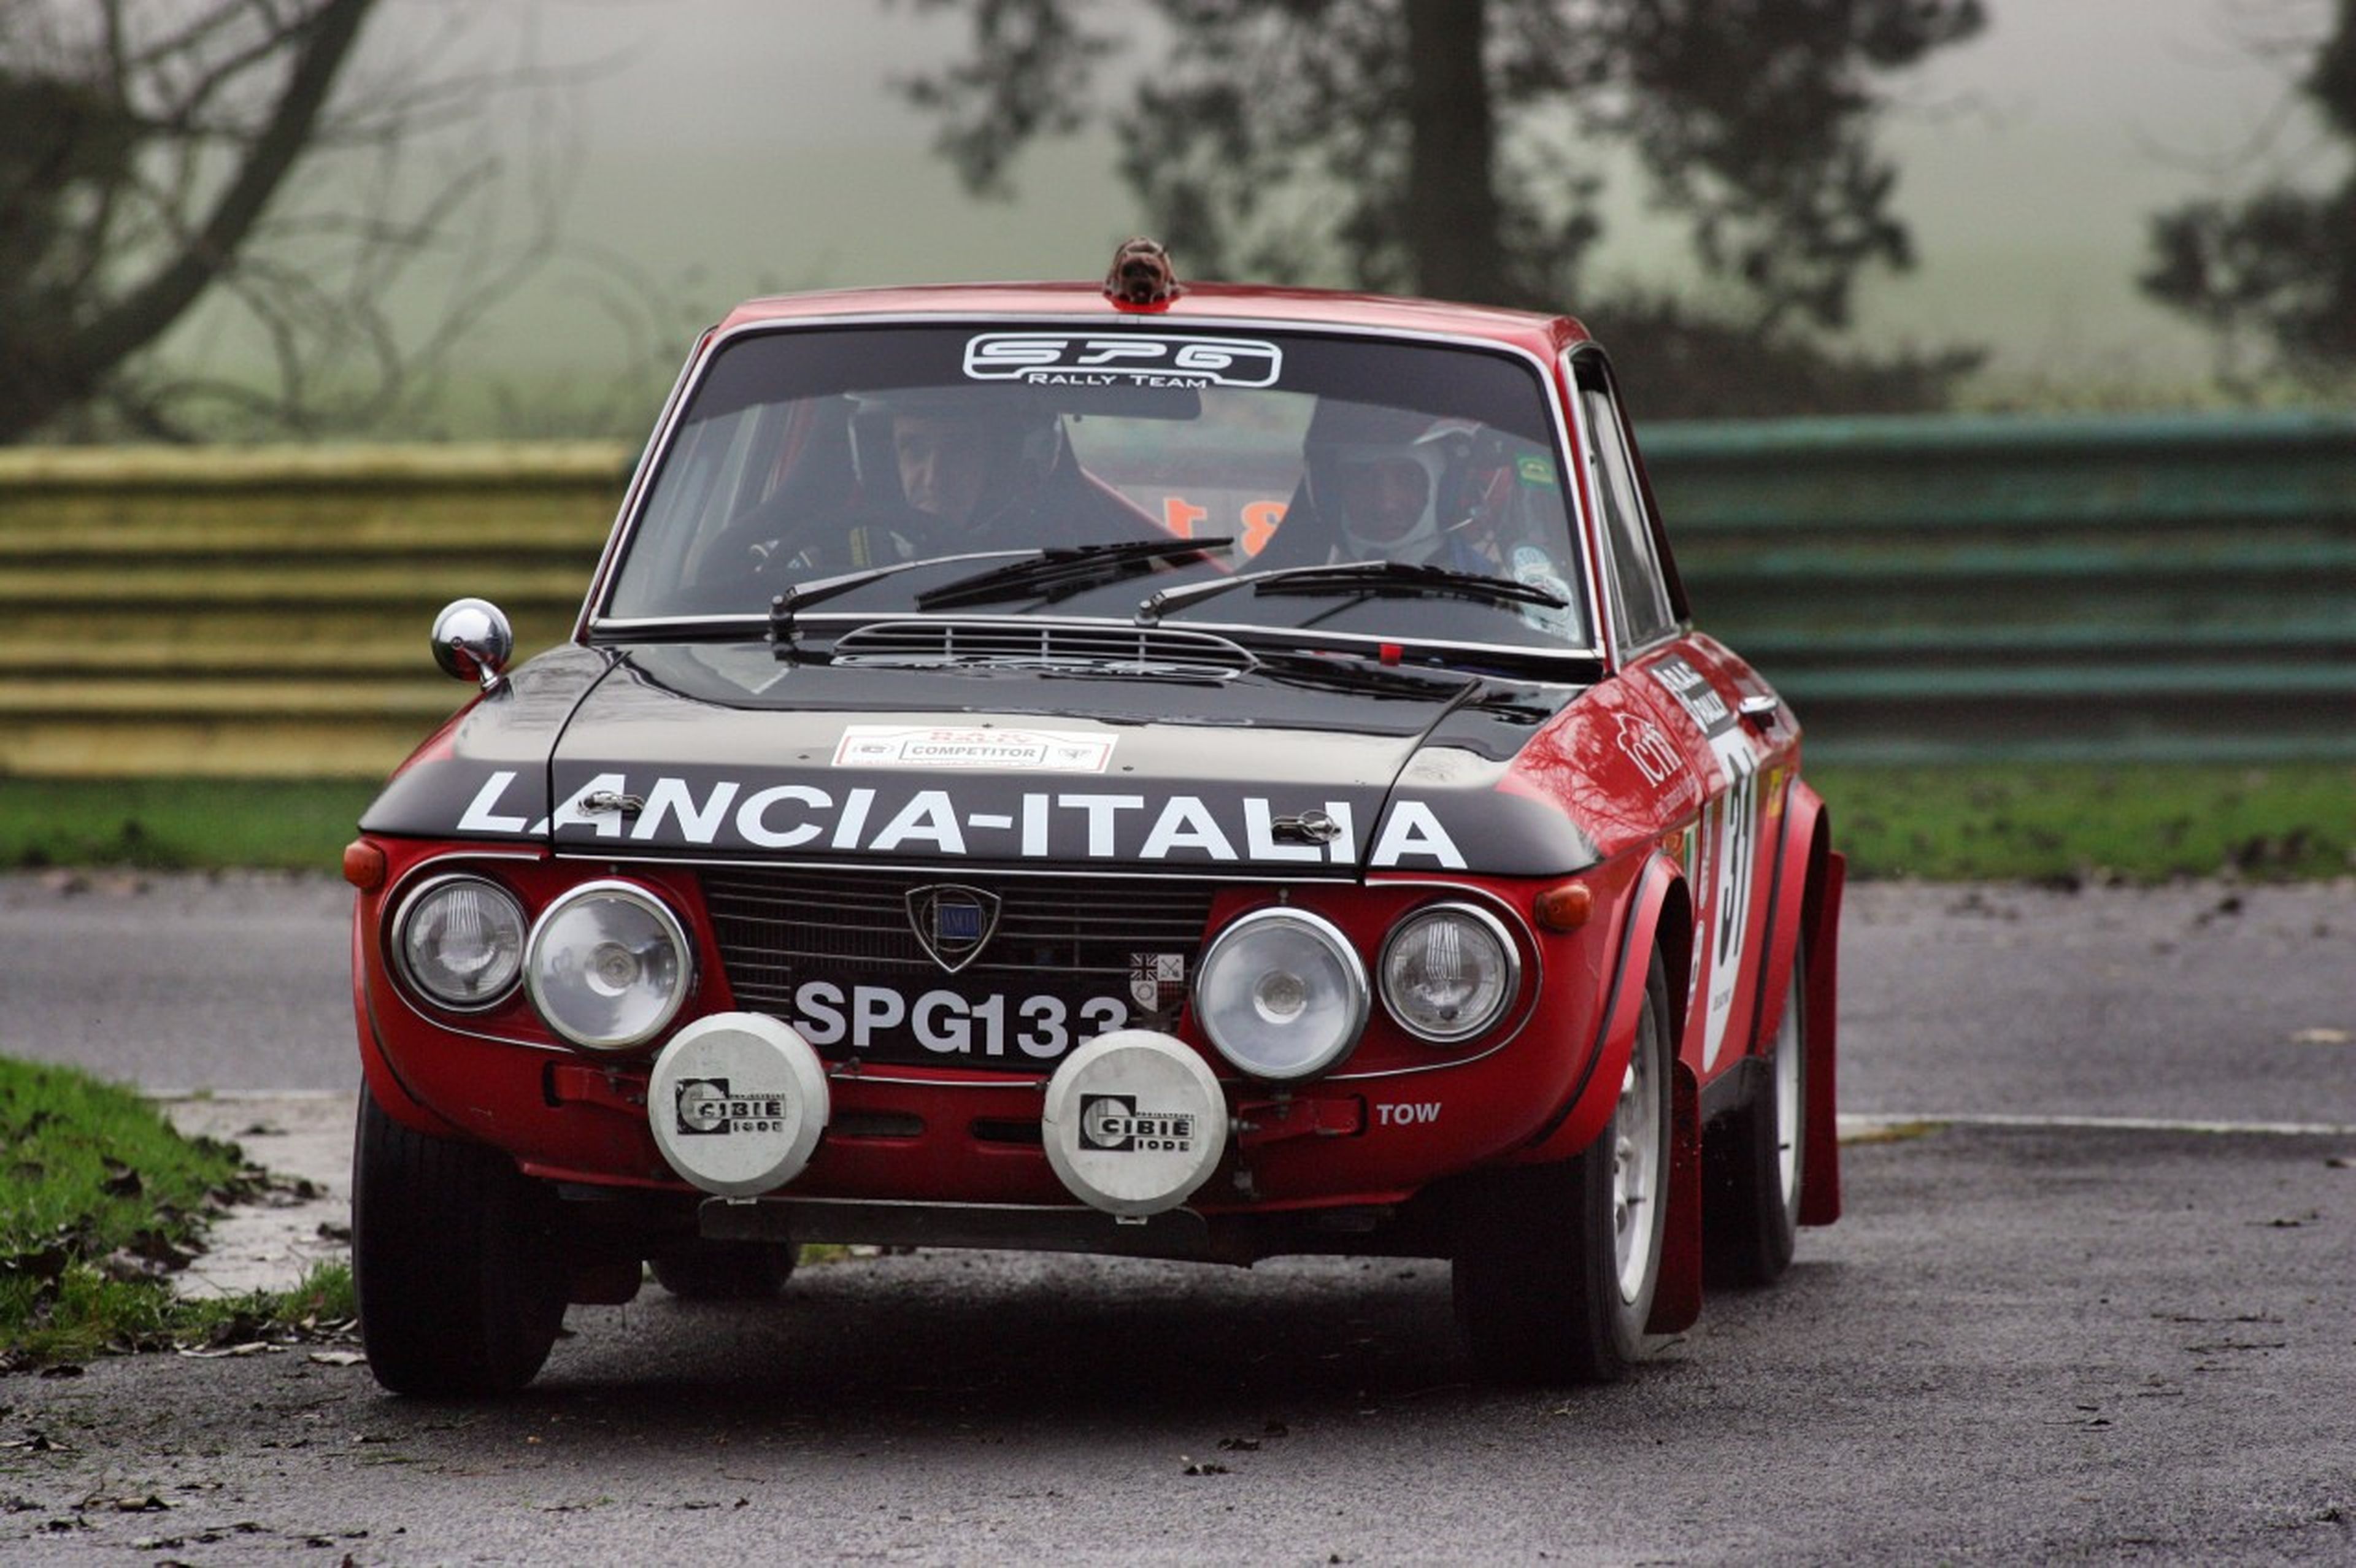 Fulvia, Stratos, 037 y Delta: el póker de Ases de Lancia en Rallys